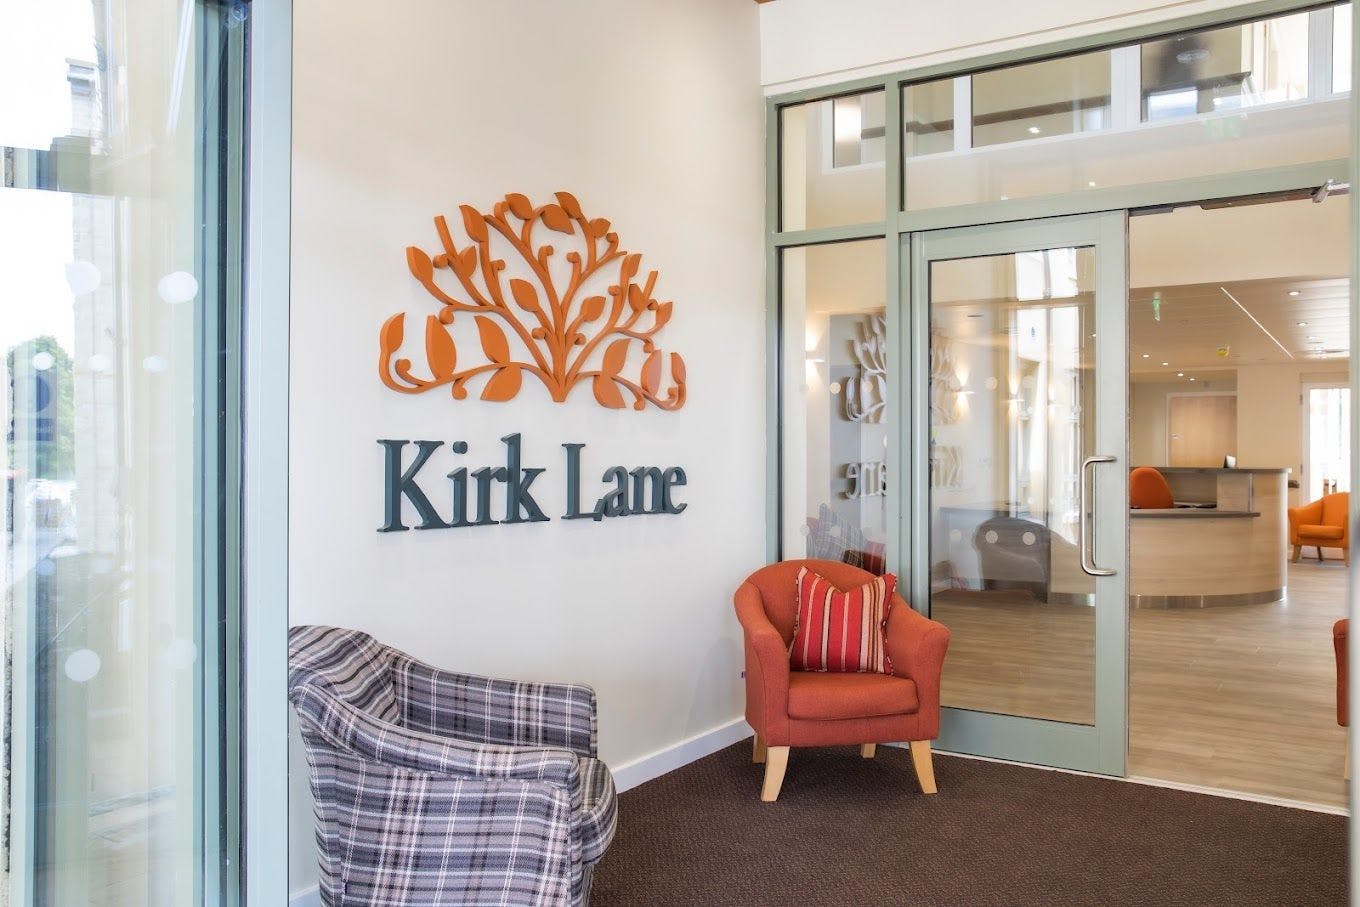 Kirk Lane care home in Livingston 2